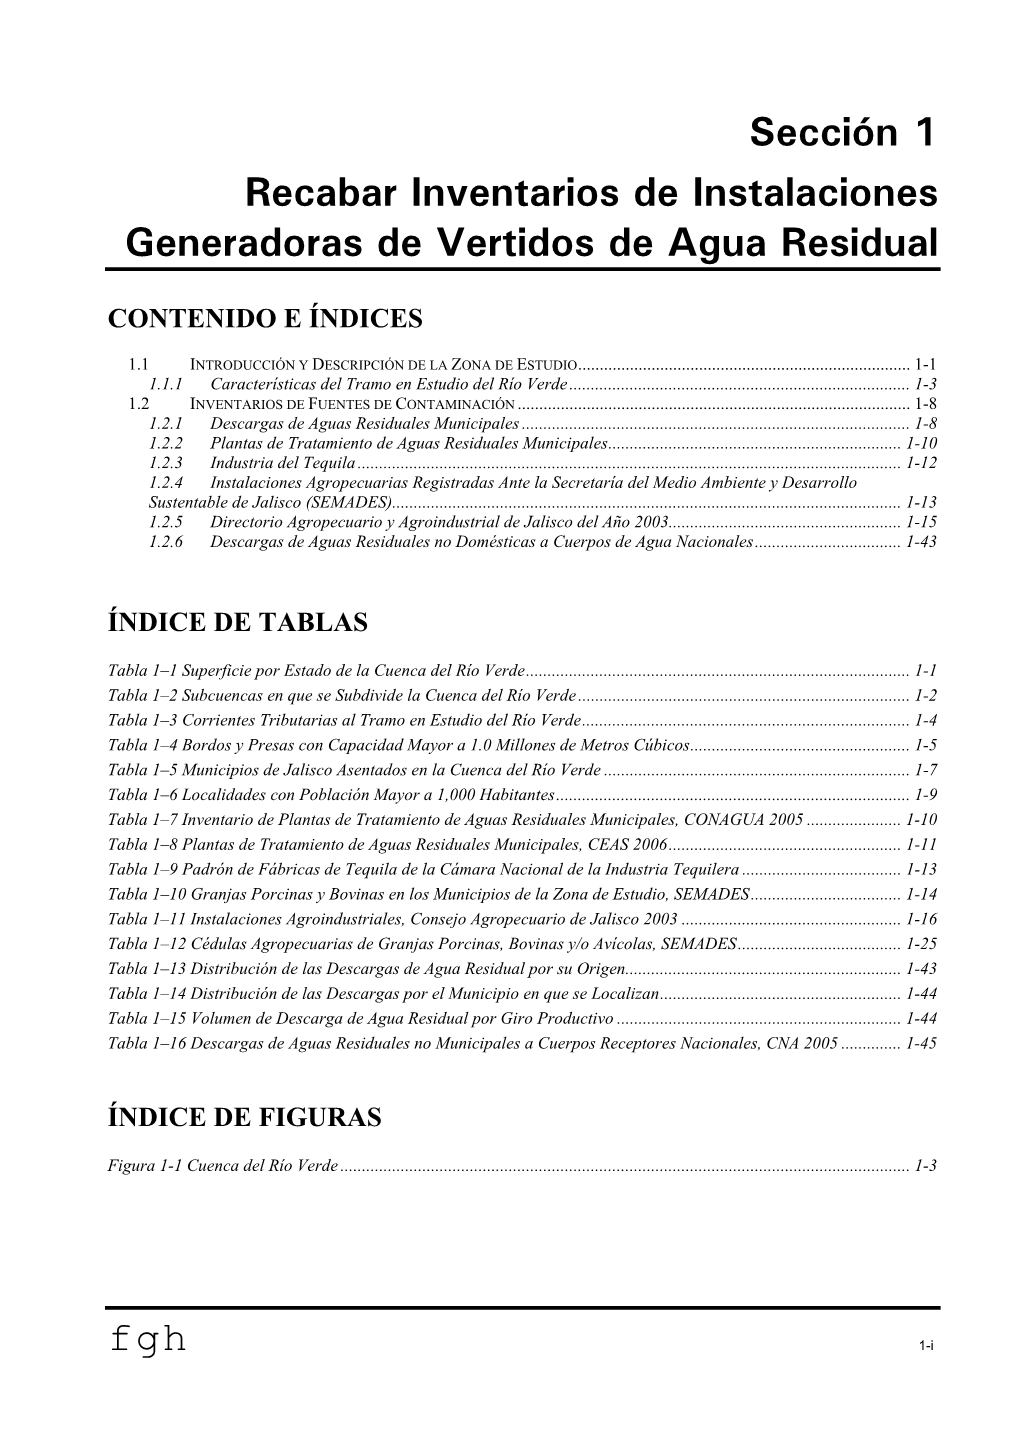 Sección 1 Recabar Inventarios De Instalaciones Generadoras De Vertidos De Agua Residual